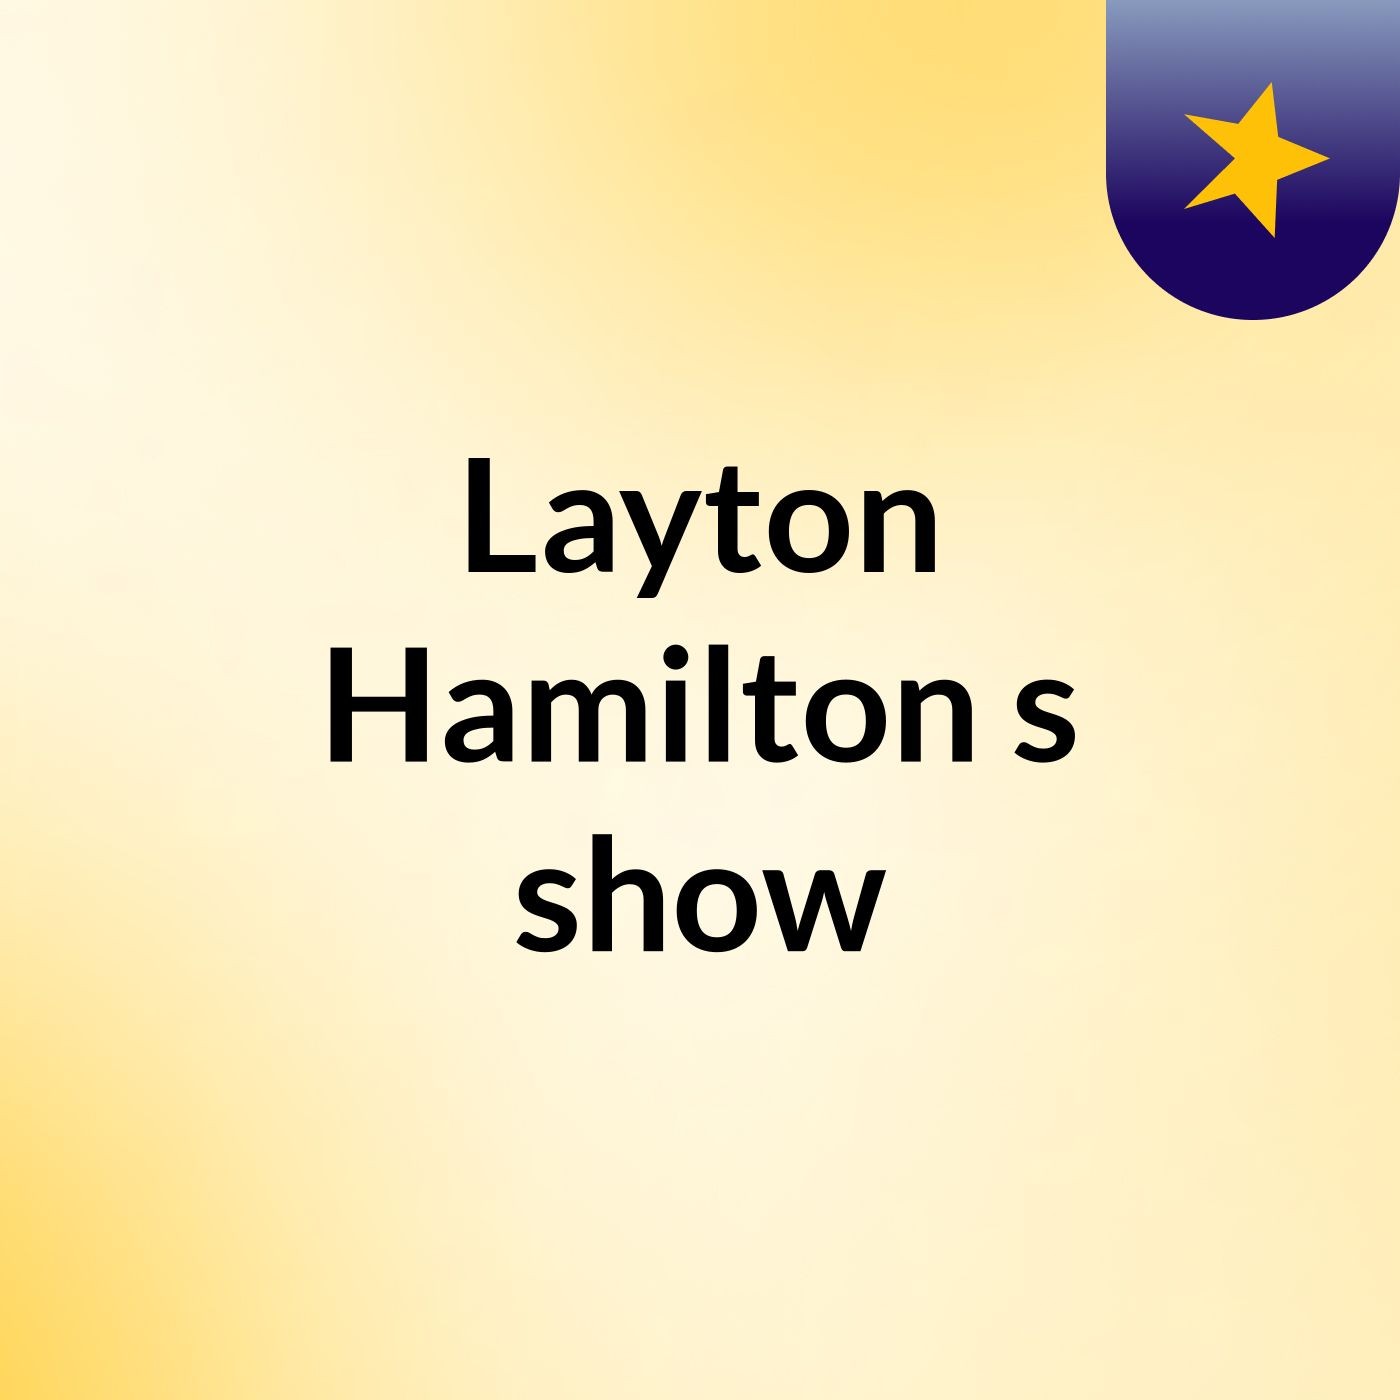 Episode 2 - Layton Hamilton's show